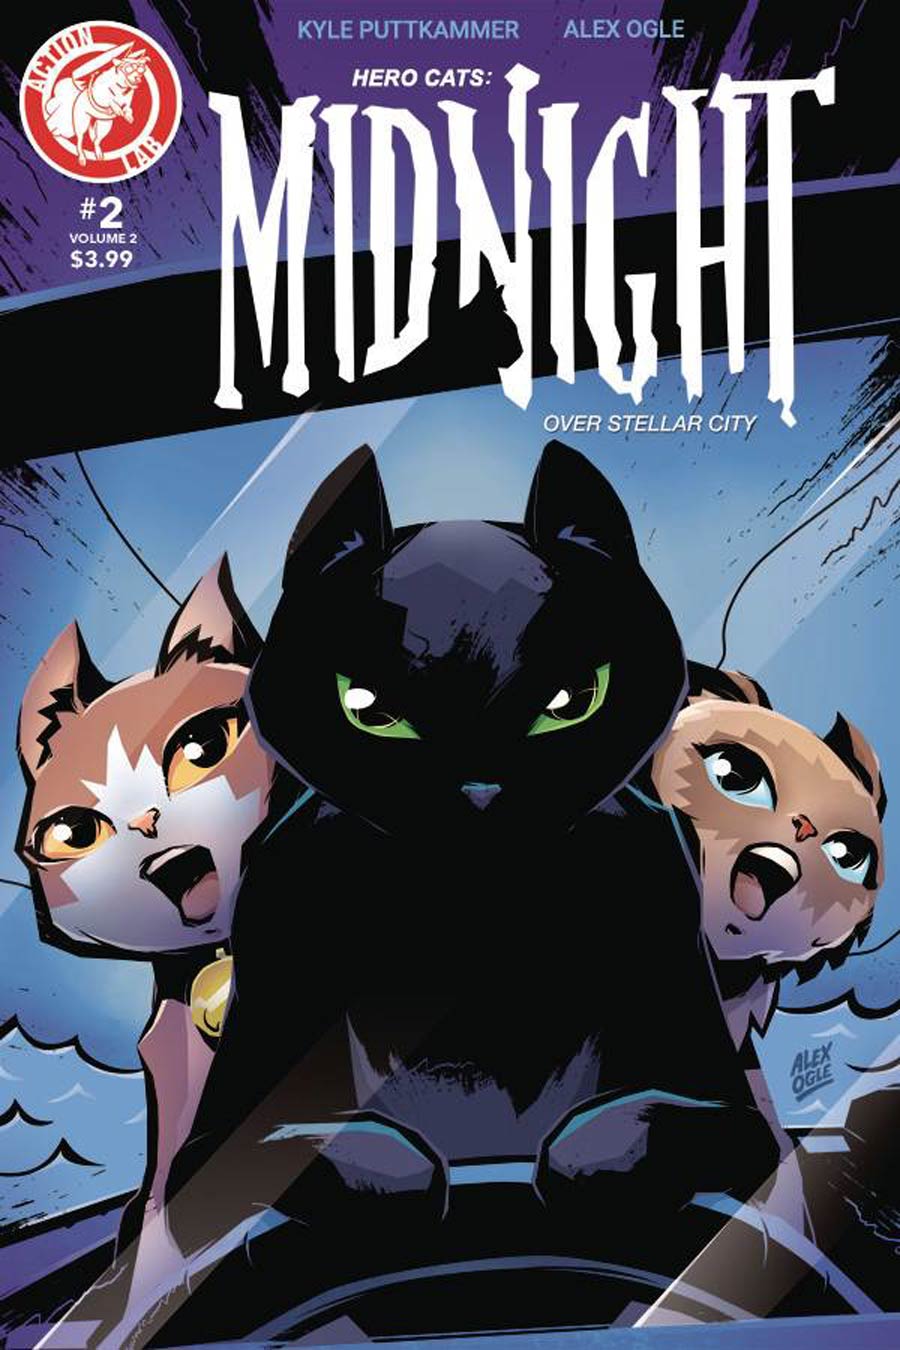 Hero Cats Midnight Over Stellar City Vol 2 #2